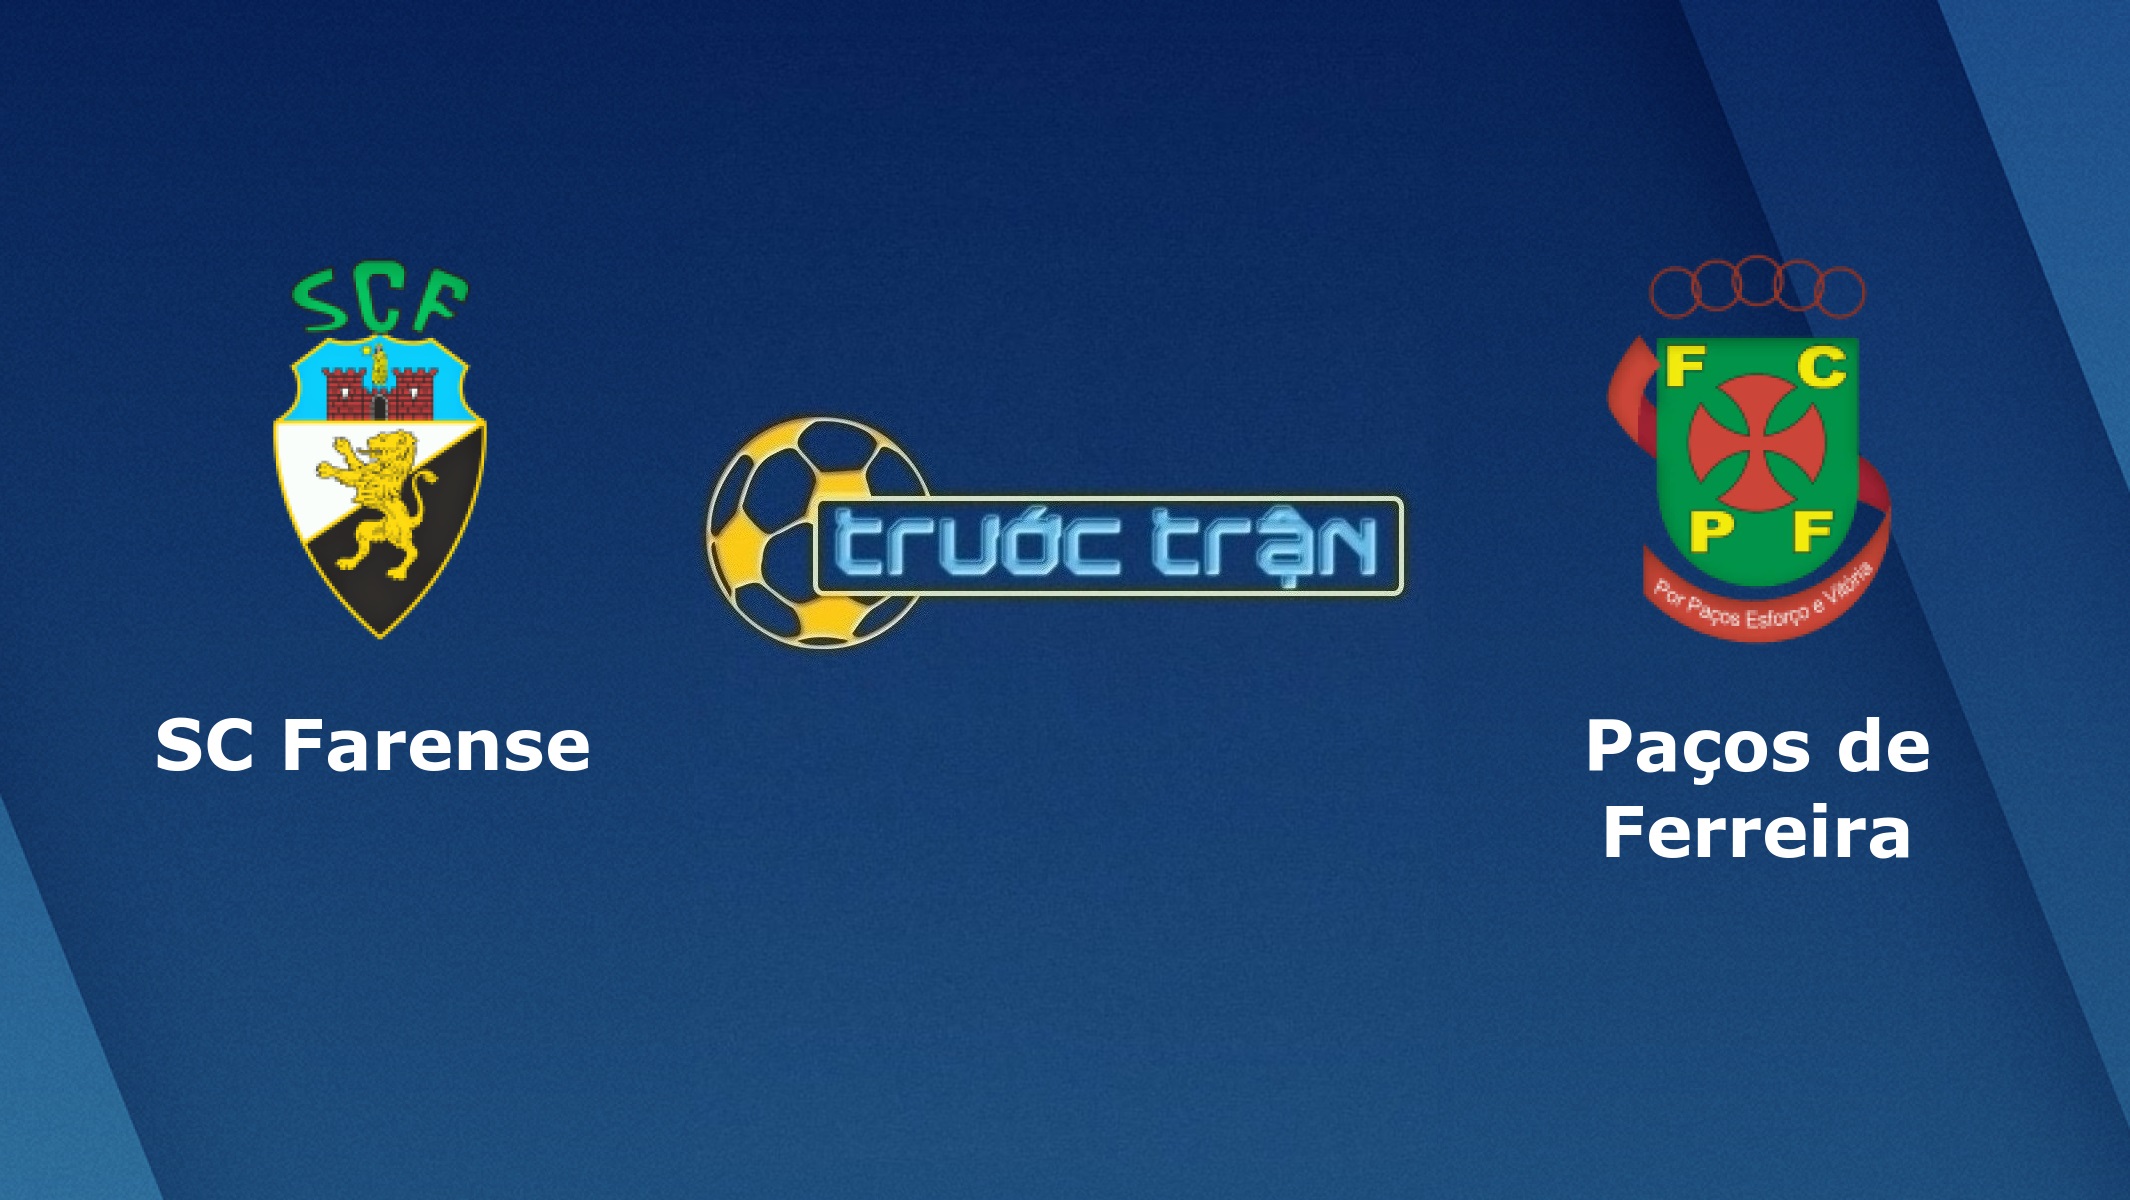 SC Farense vs Pacos de Ferreira – Tip kèo bóng đá hôm nay – 00h30 28/12/2020